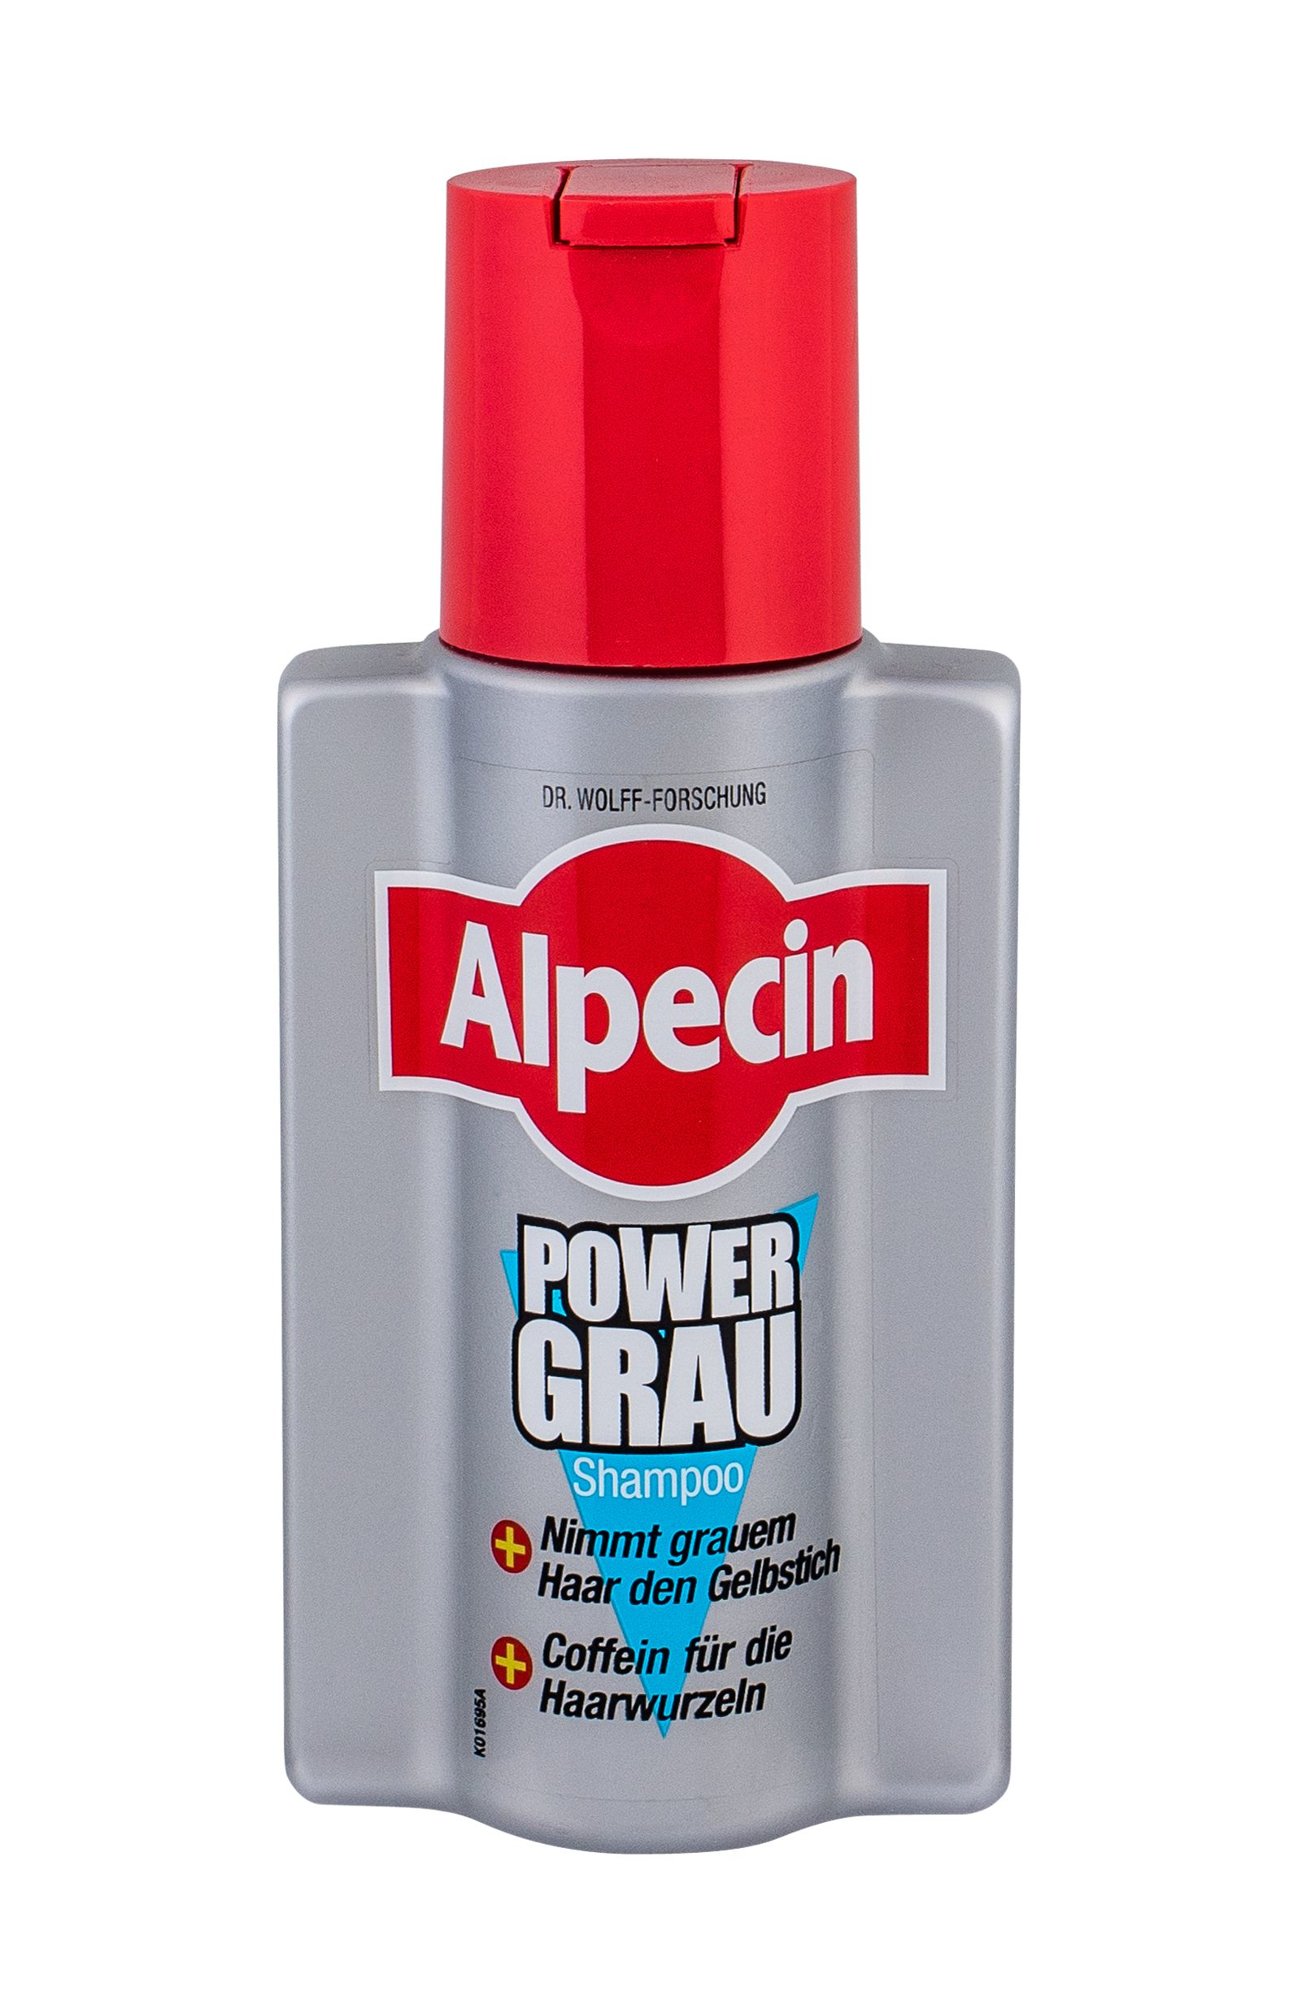 Alpecin PowerGrey Shampoo